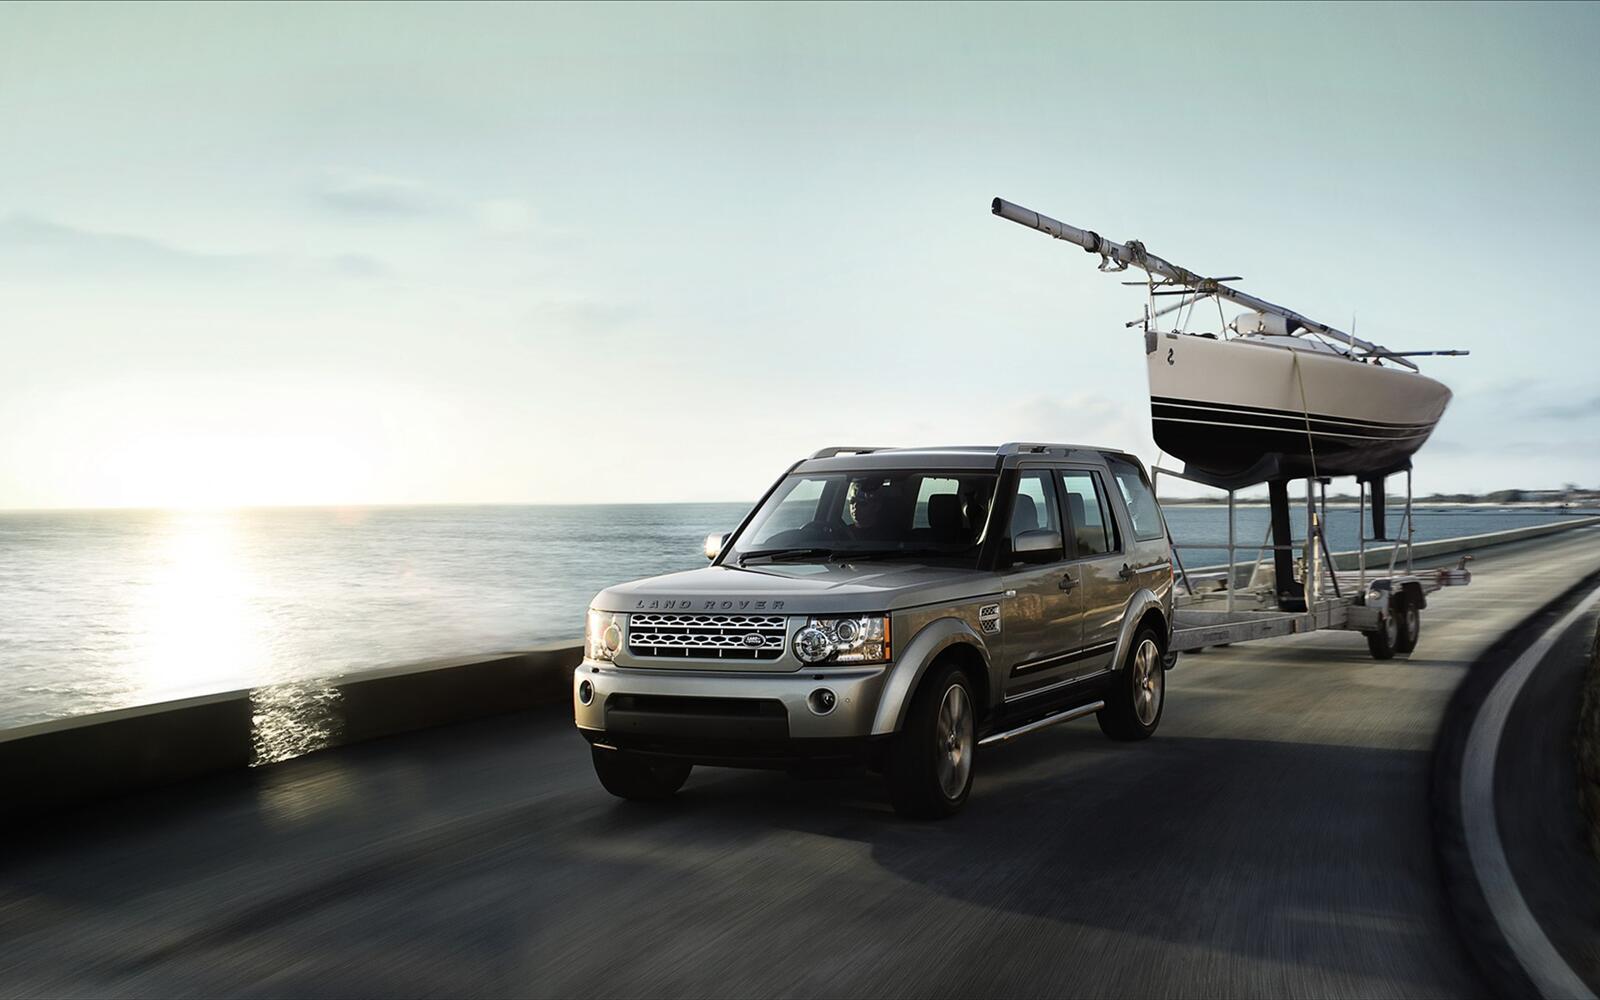 Бесплатное фото Land rover discovery 4 едет по берегу моря с прицепом с лодкой